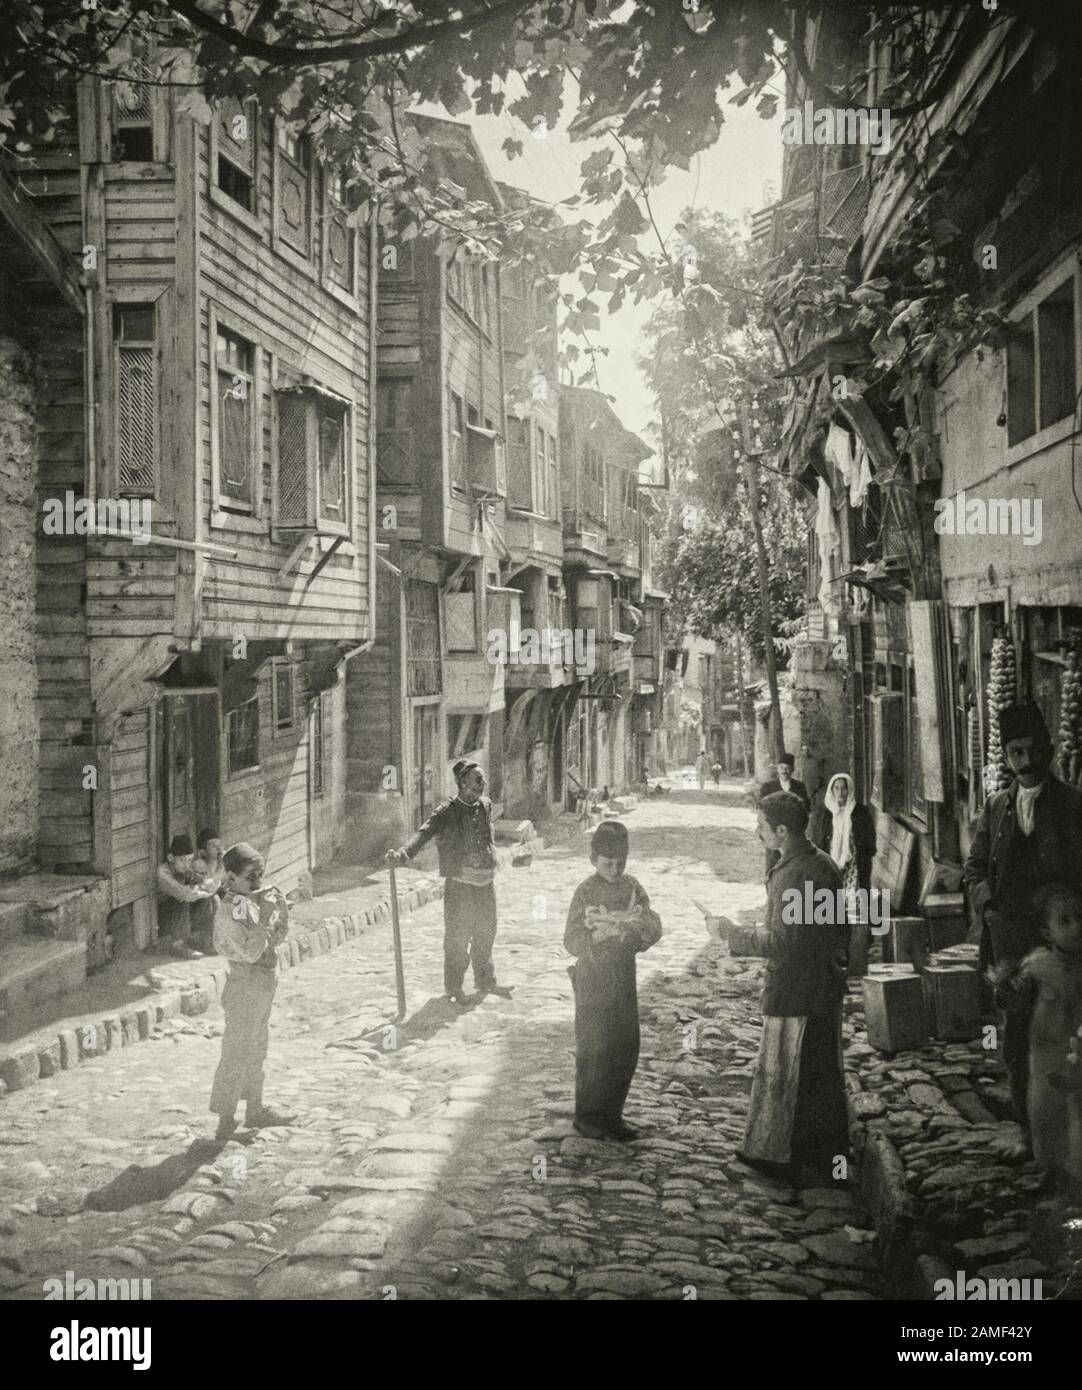 Une scène dans un magasin de fruits et légumes situé dans l'une des anciennes rues d'Istanbul, près de la basilique Sainte-Sophie (Ayasofya), 1912. Banque D'Images